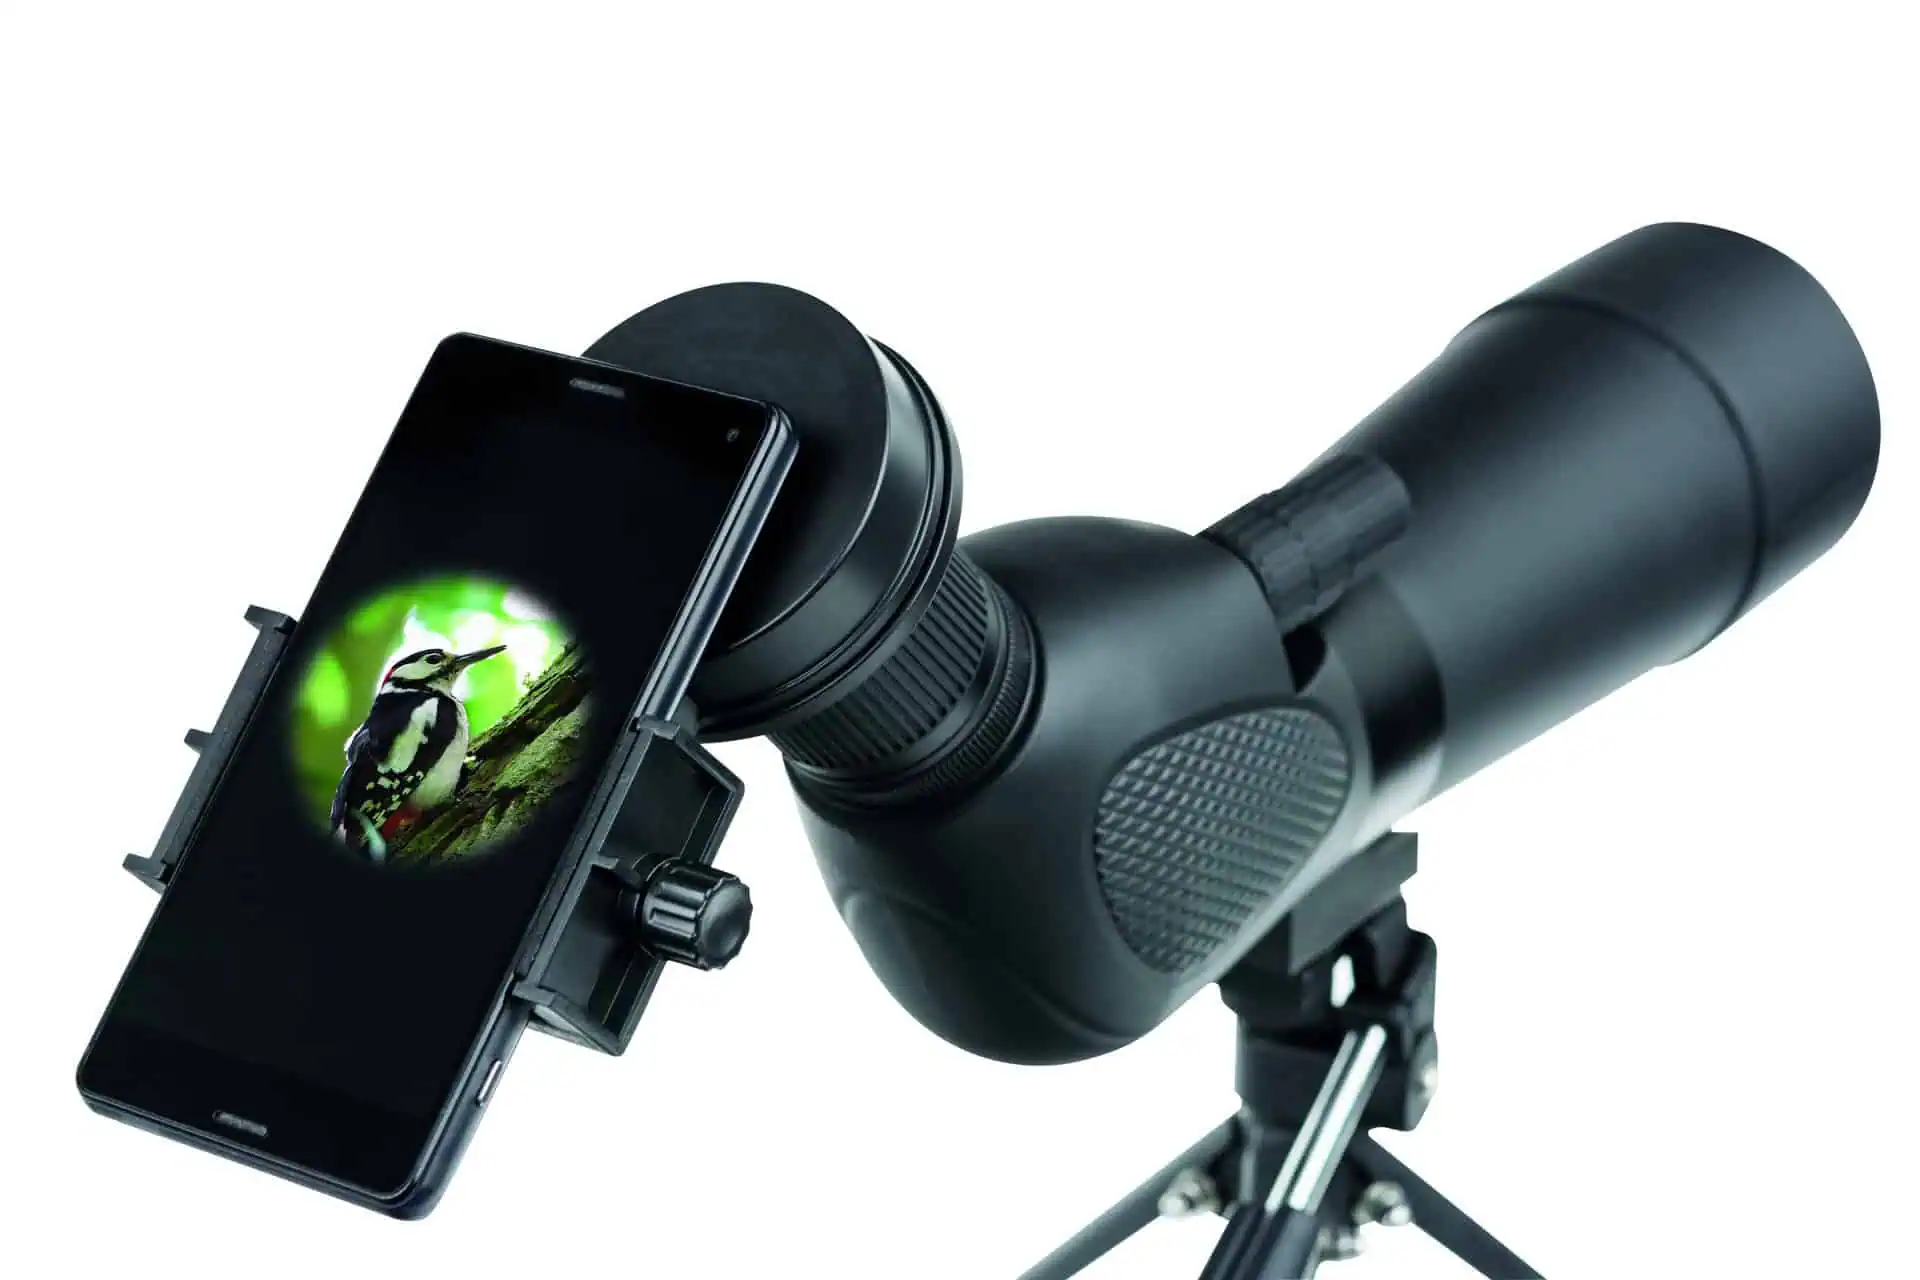 Universal fotoadapter för smartphone SA-1 för kikarsikten